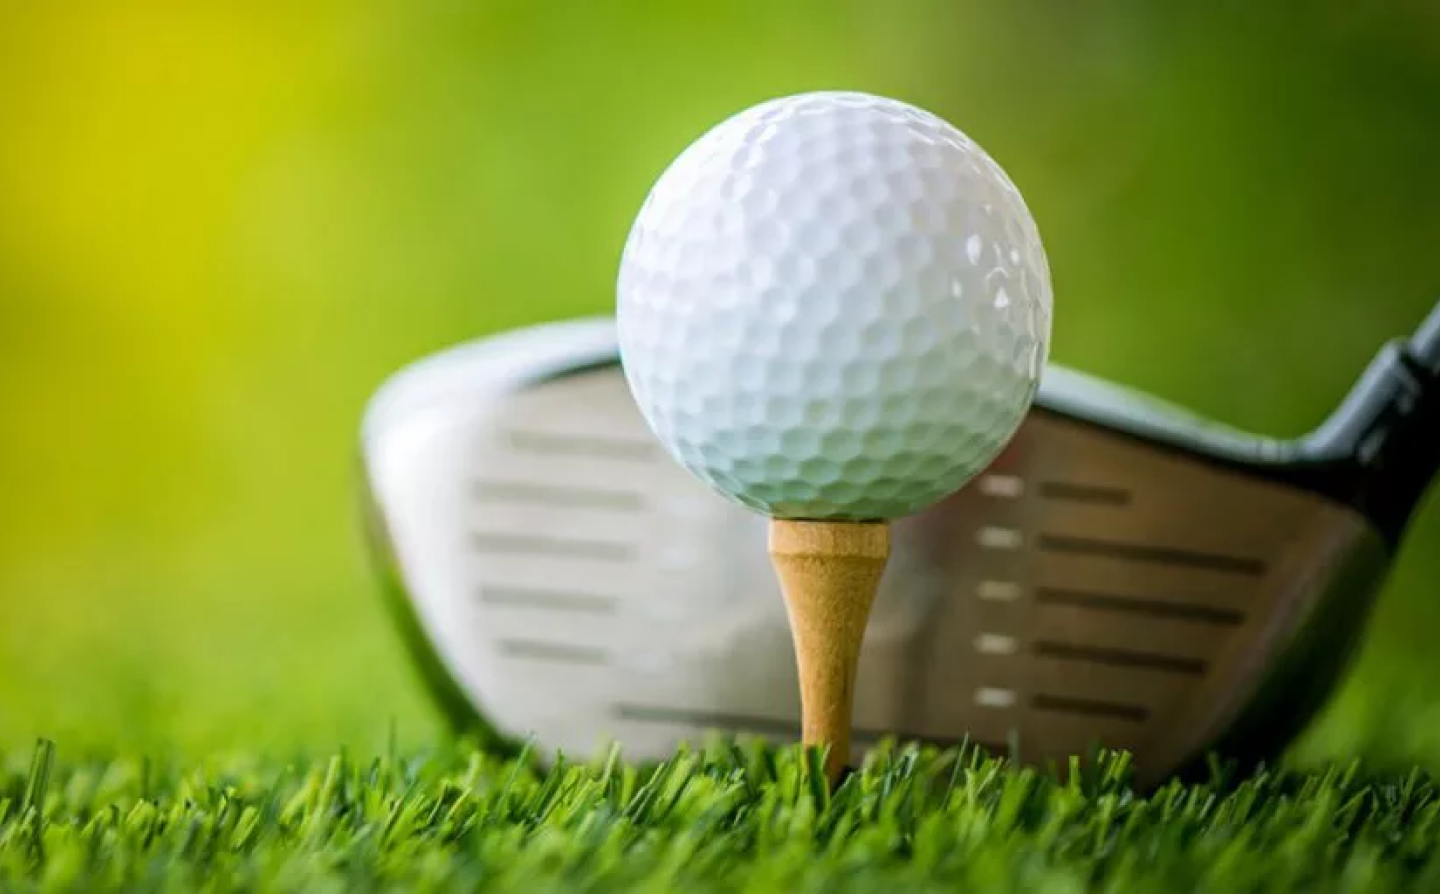 Как играть в гольф — главные правила игры простым языком для начинающих